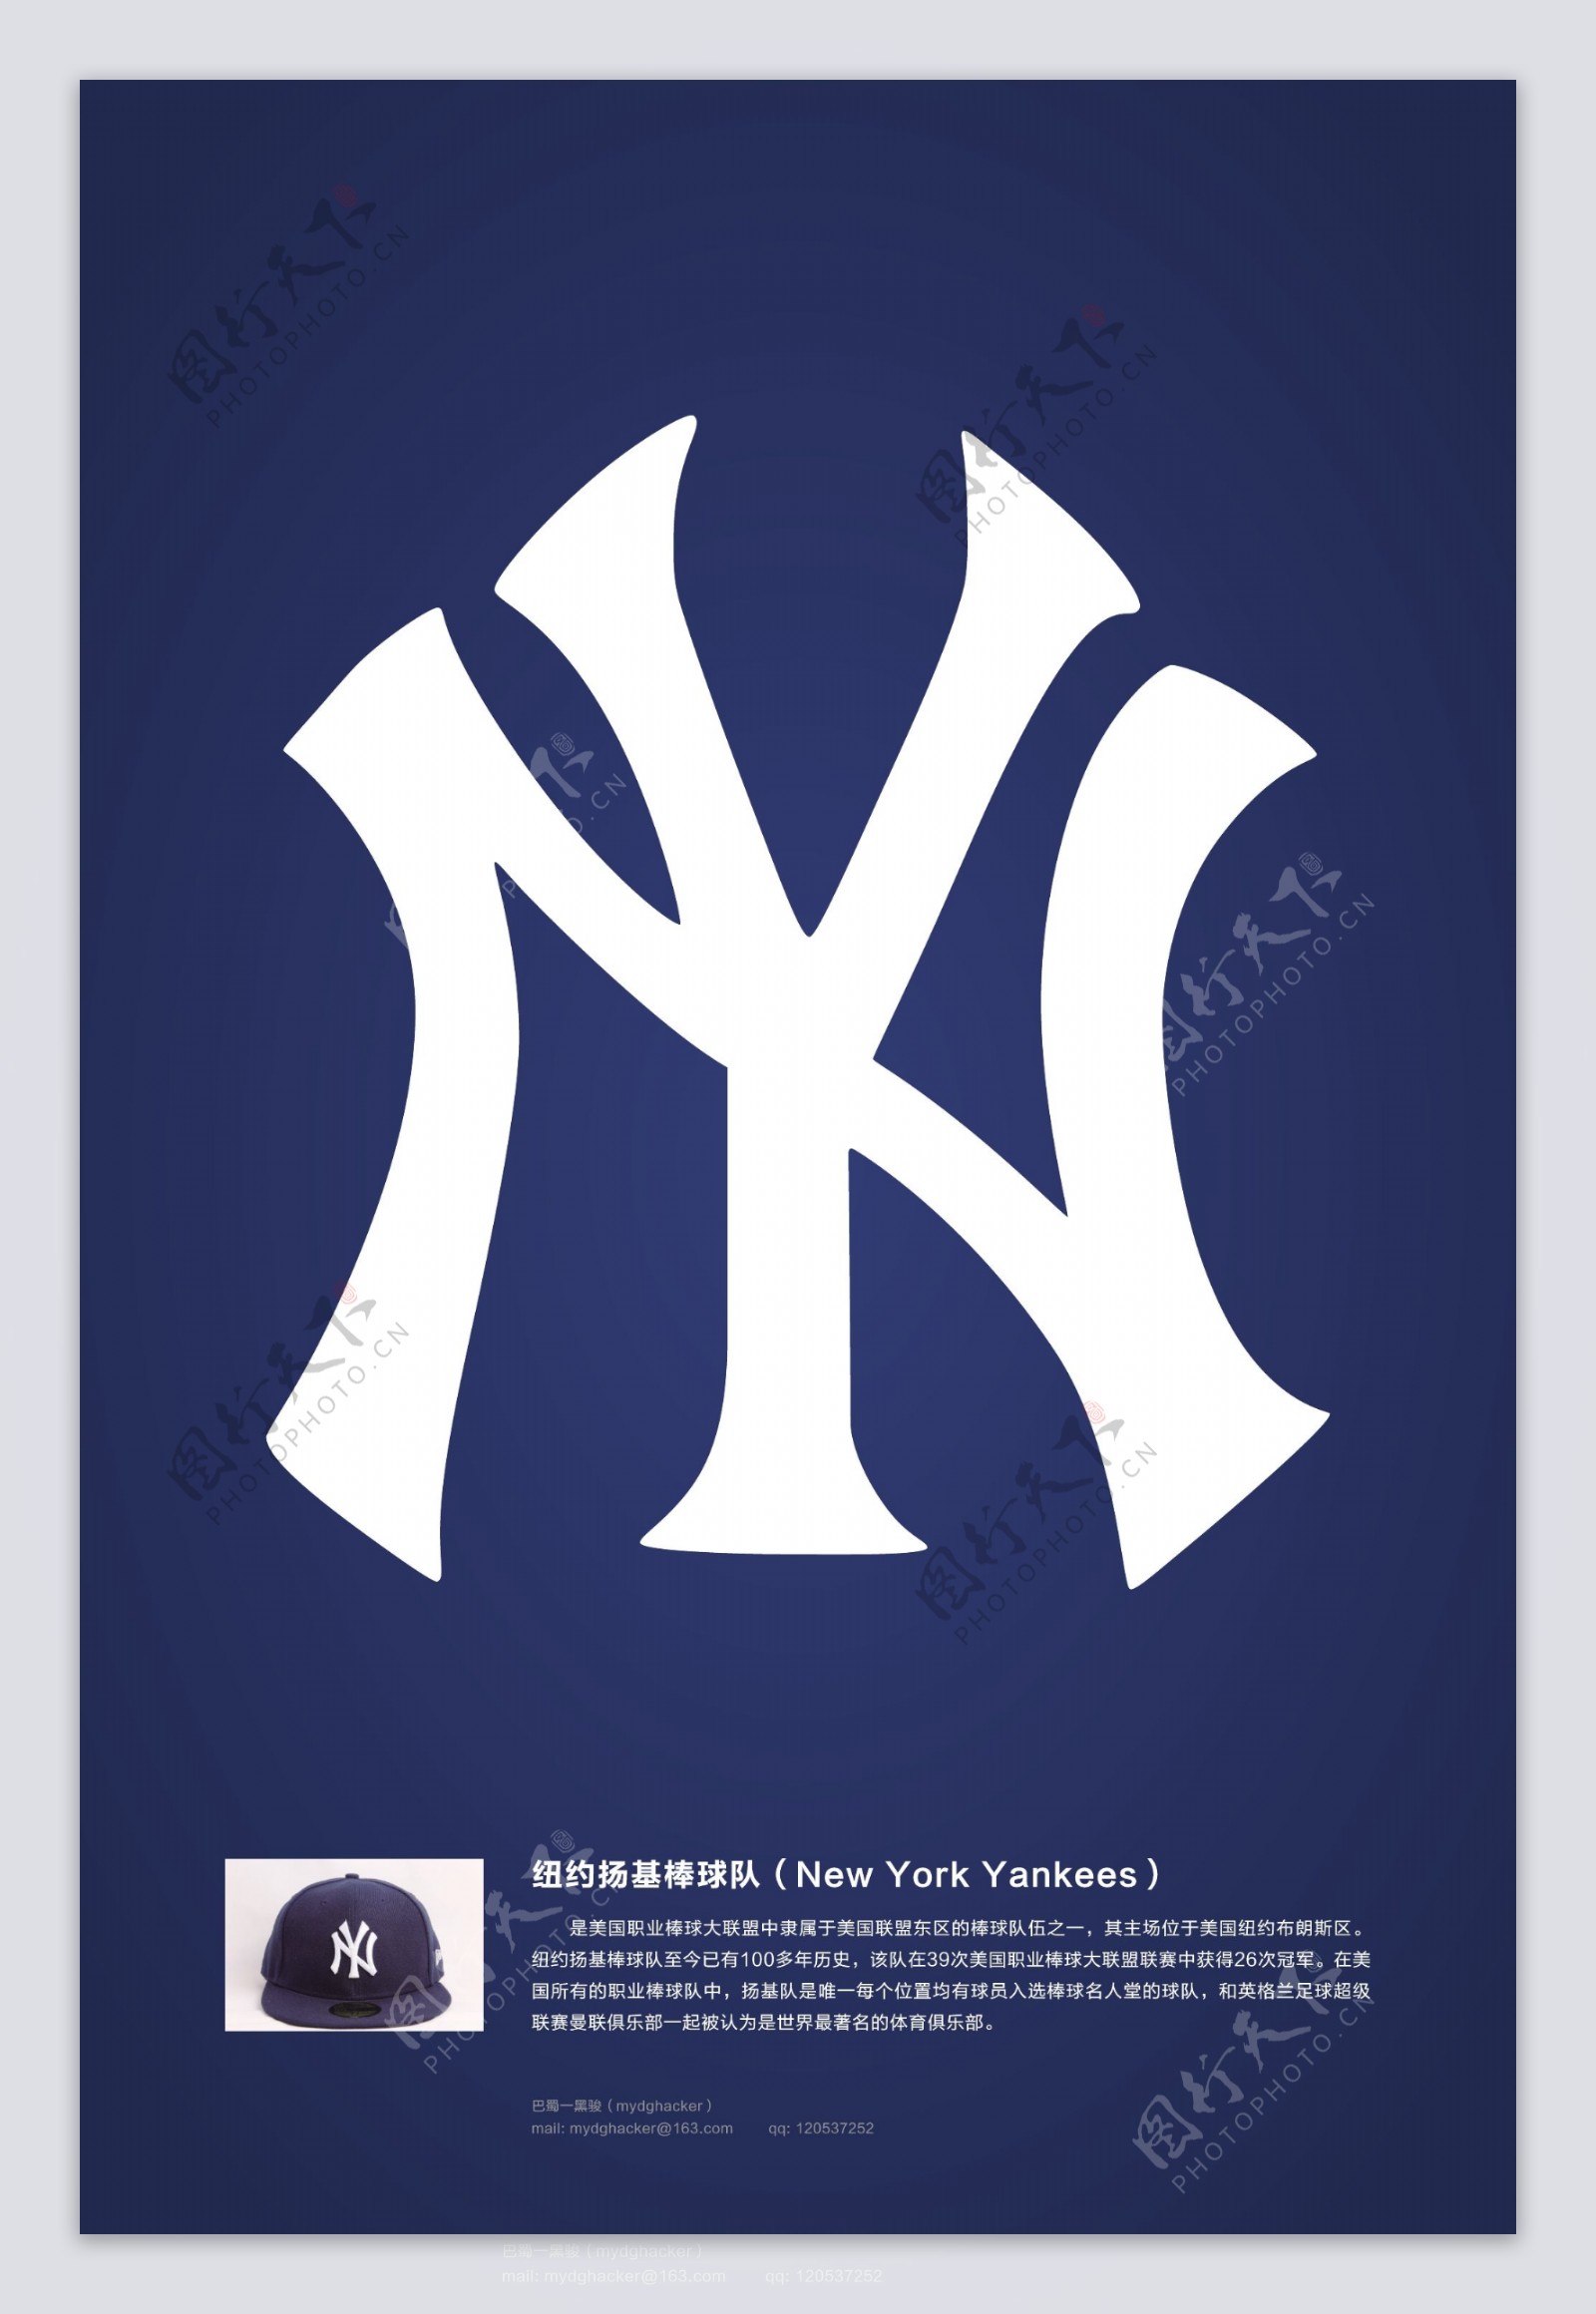 扬基棒球队logo矢量素材